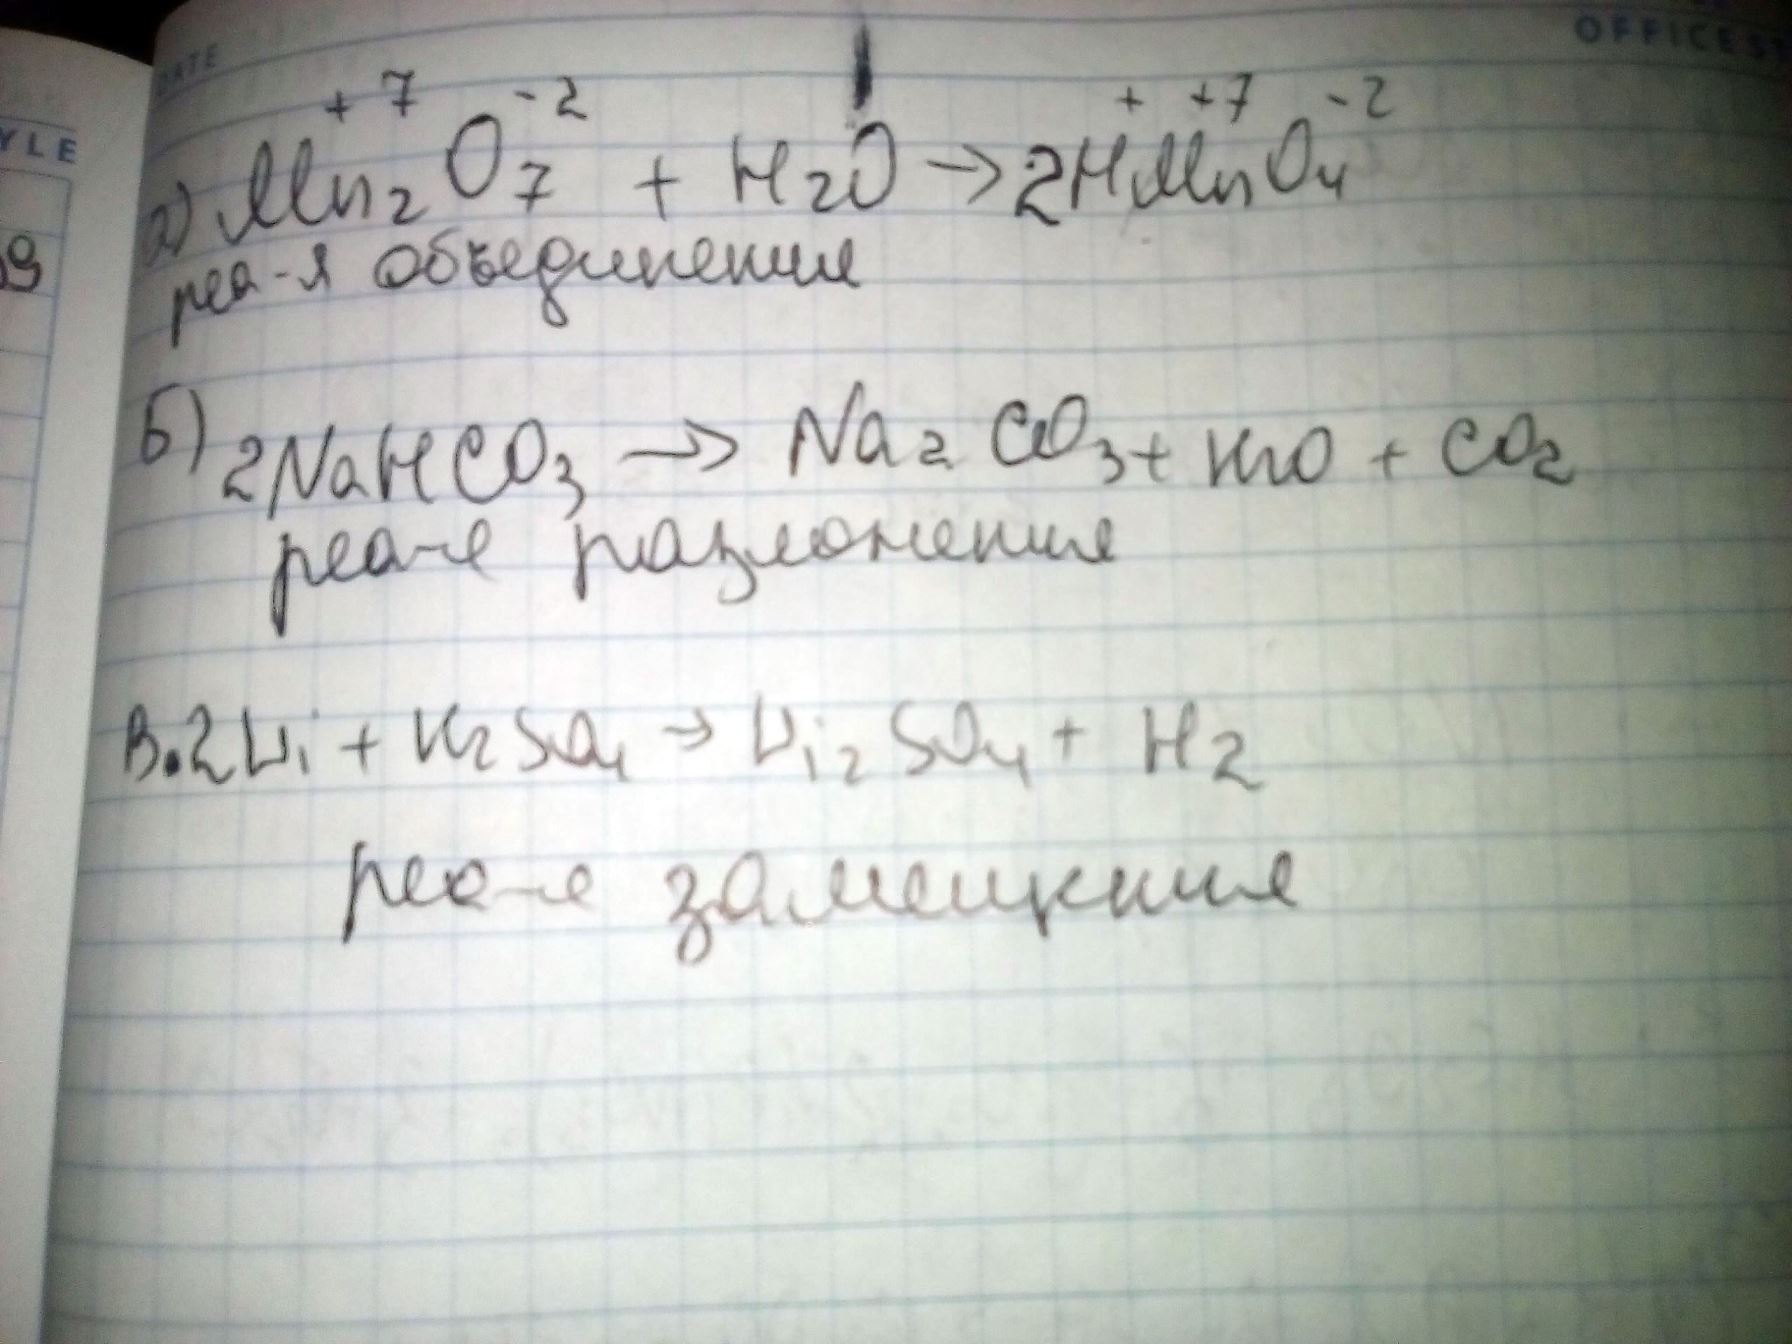 Расставьте коэффициенты и укажите тип реакции A) MnO7+H2O-> HmnO4 Б NaHCO3->Na2Co3+H2O+CO2 В Li+H2SO4->Li2SO4+H2